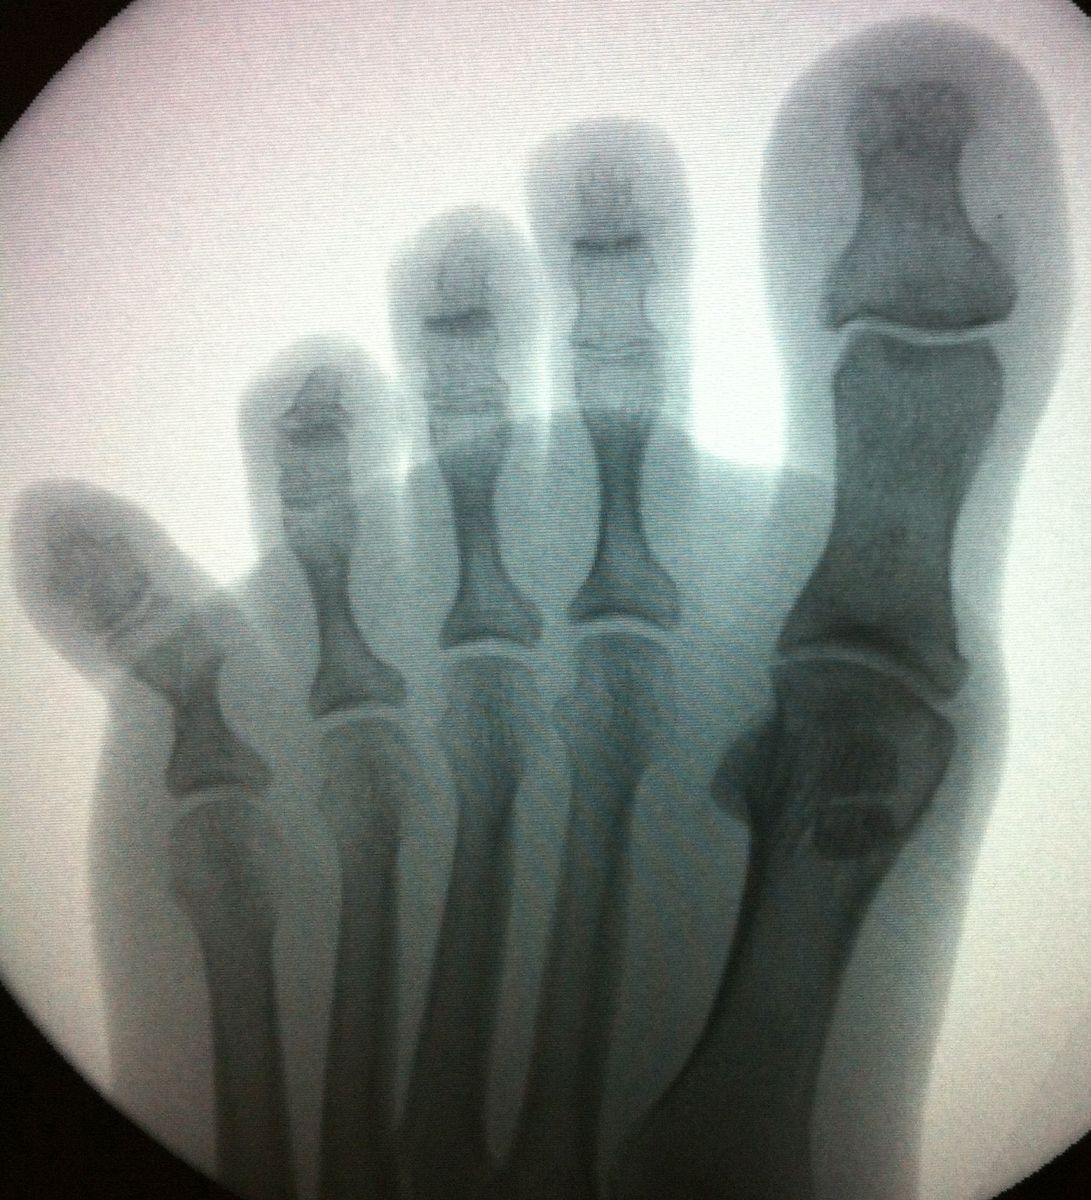 Ногтевой фаланги пальца ноги. Оскольчатый перелом пальца ноги рентген. Перелом фаланги пальца стопы рентген. Перелом основной фаланги 5 пальца ноги рентген. Перелом фаланги 5 пальца стопы рентген.